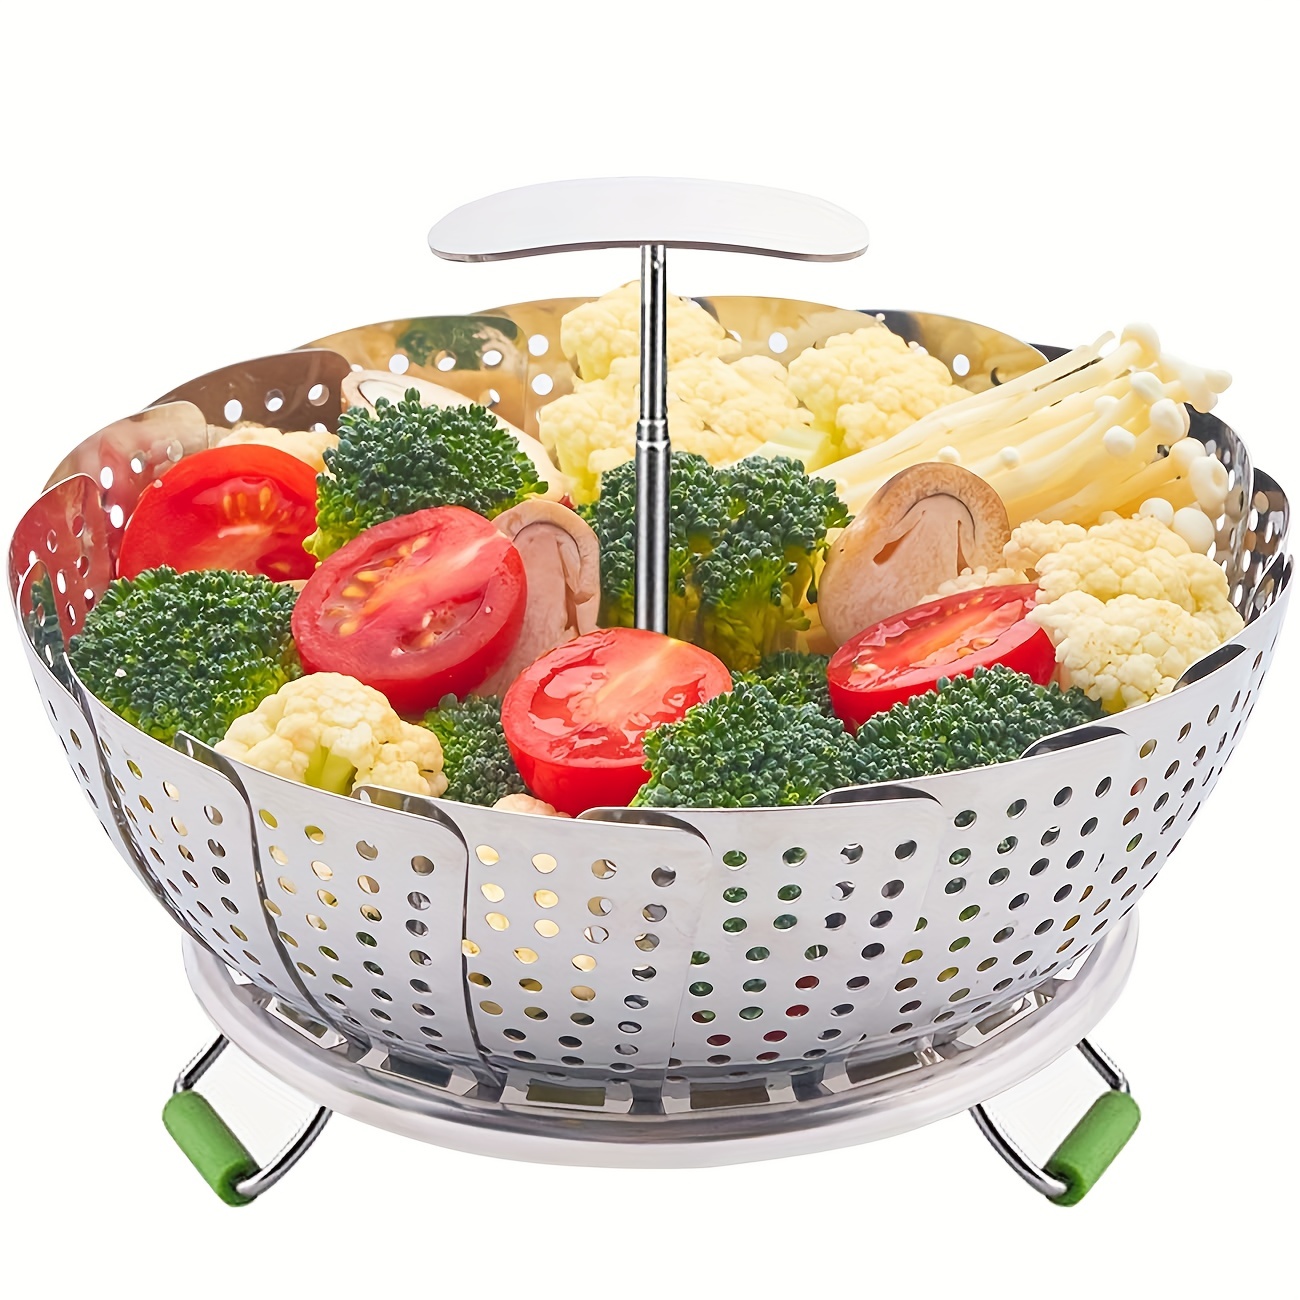 Folding Veggie Vegetable Steamer Basket,Stainless Steel Steamer